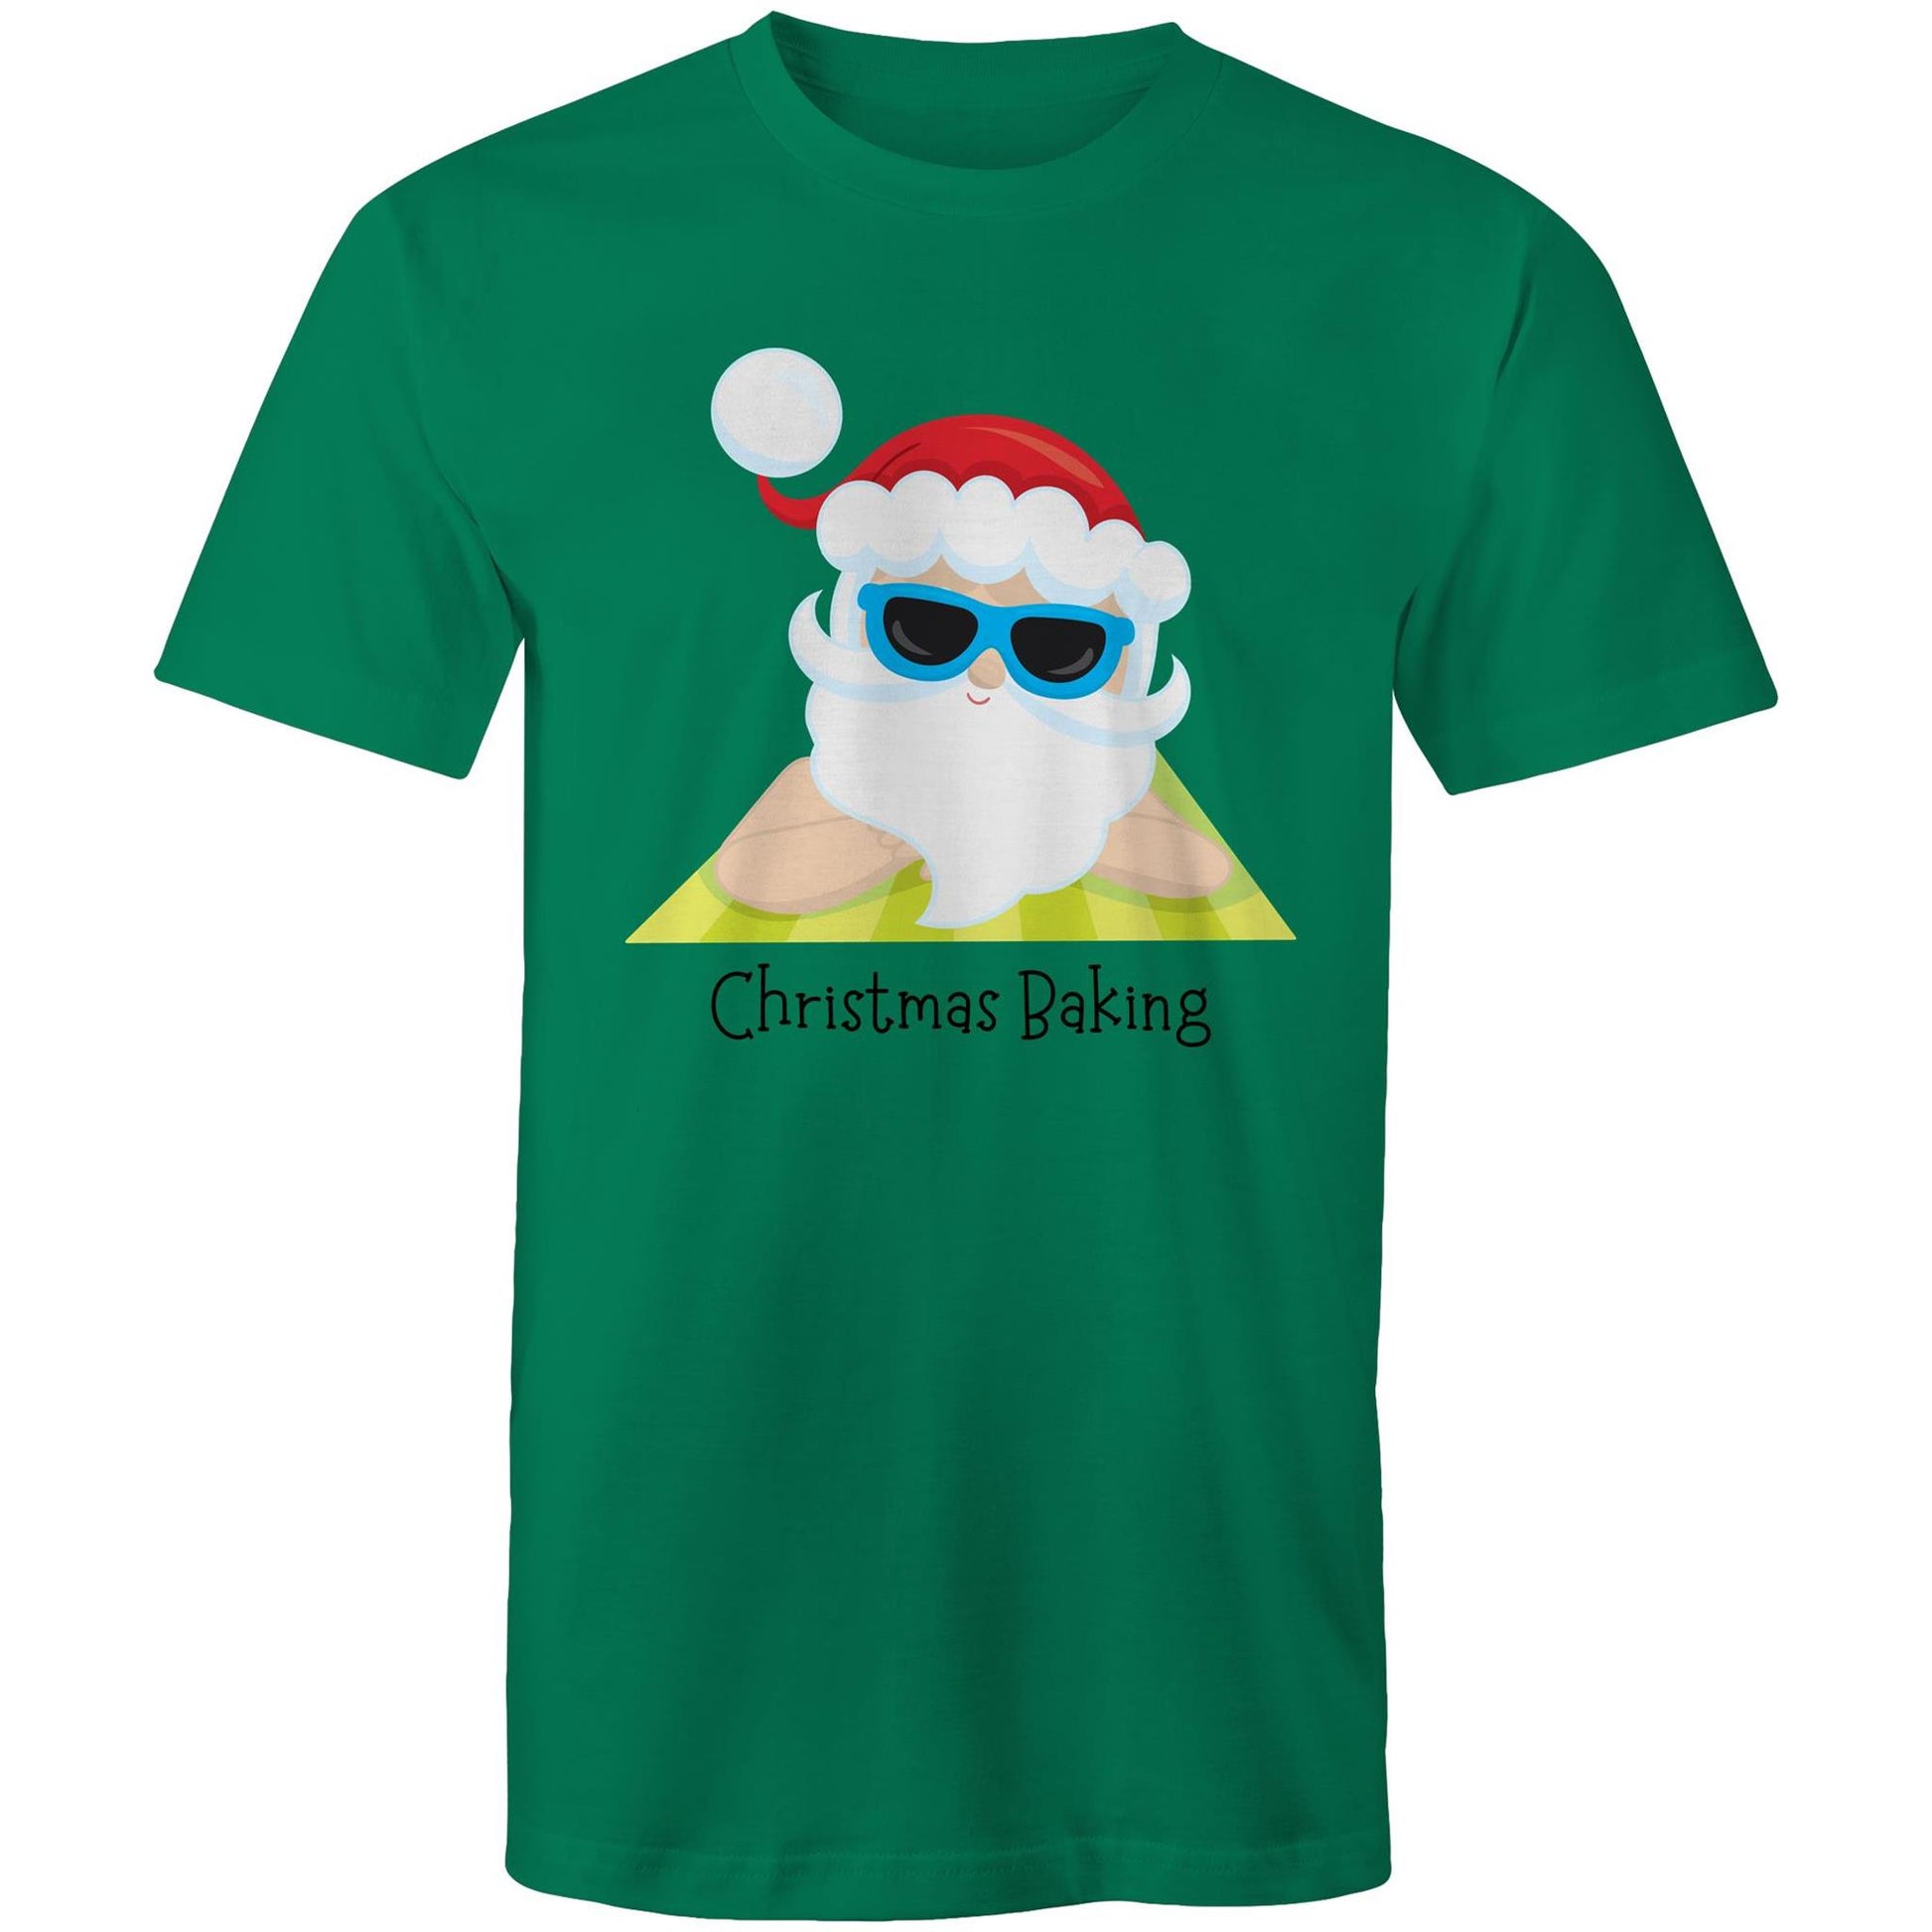 Christmas Baking - Mens T-Shirt Kelly Green Christmas Mens T-shirt Merry Christmas